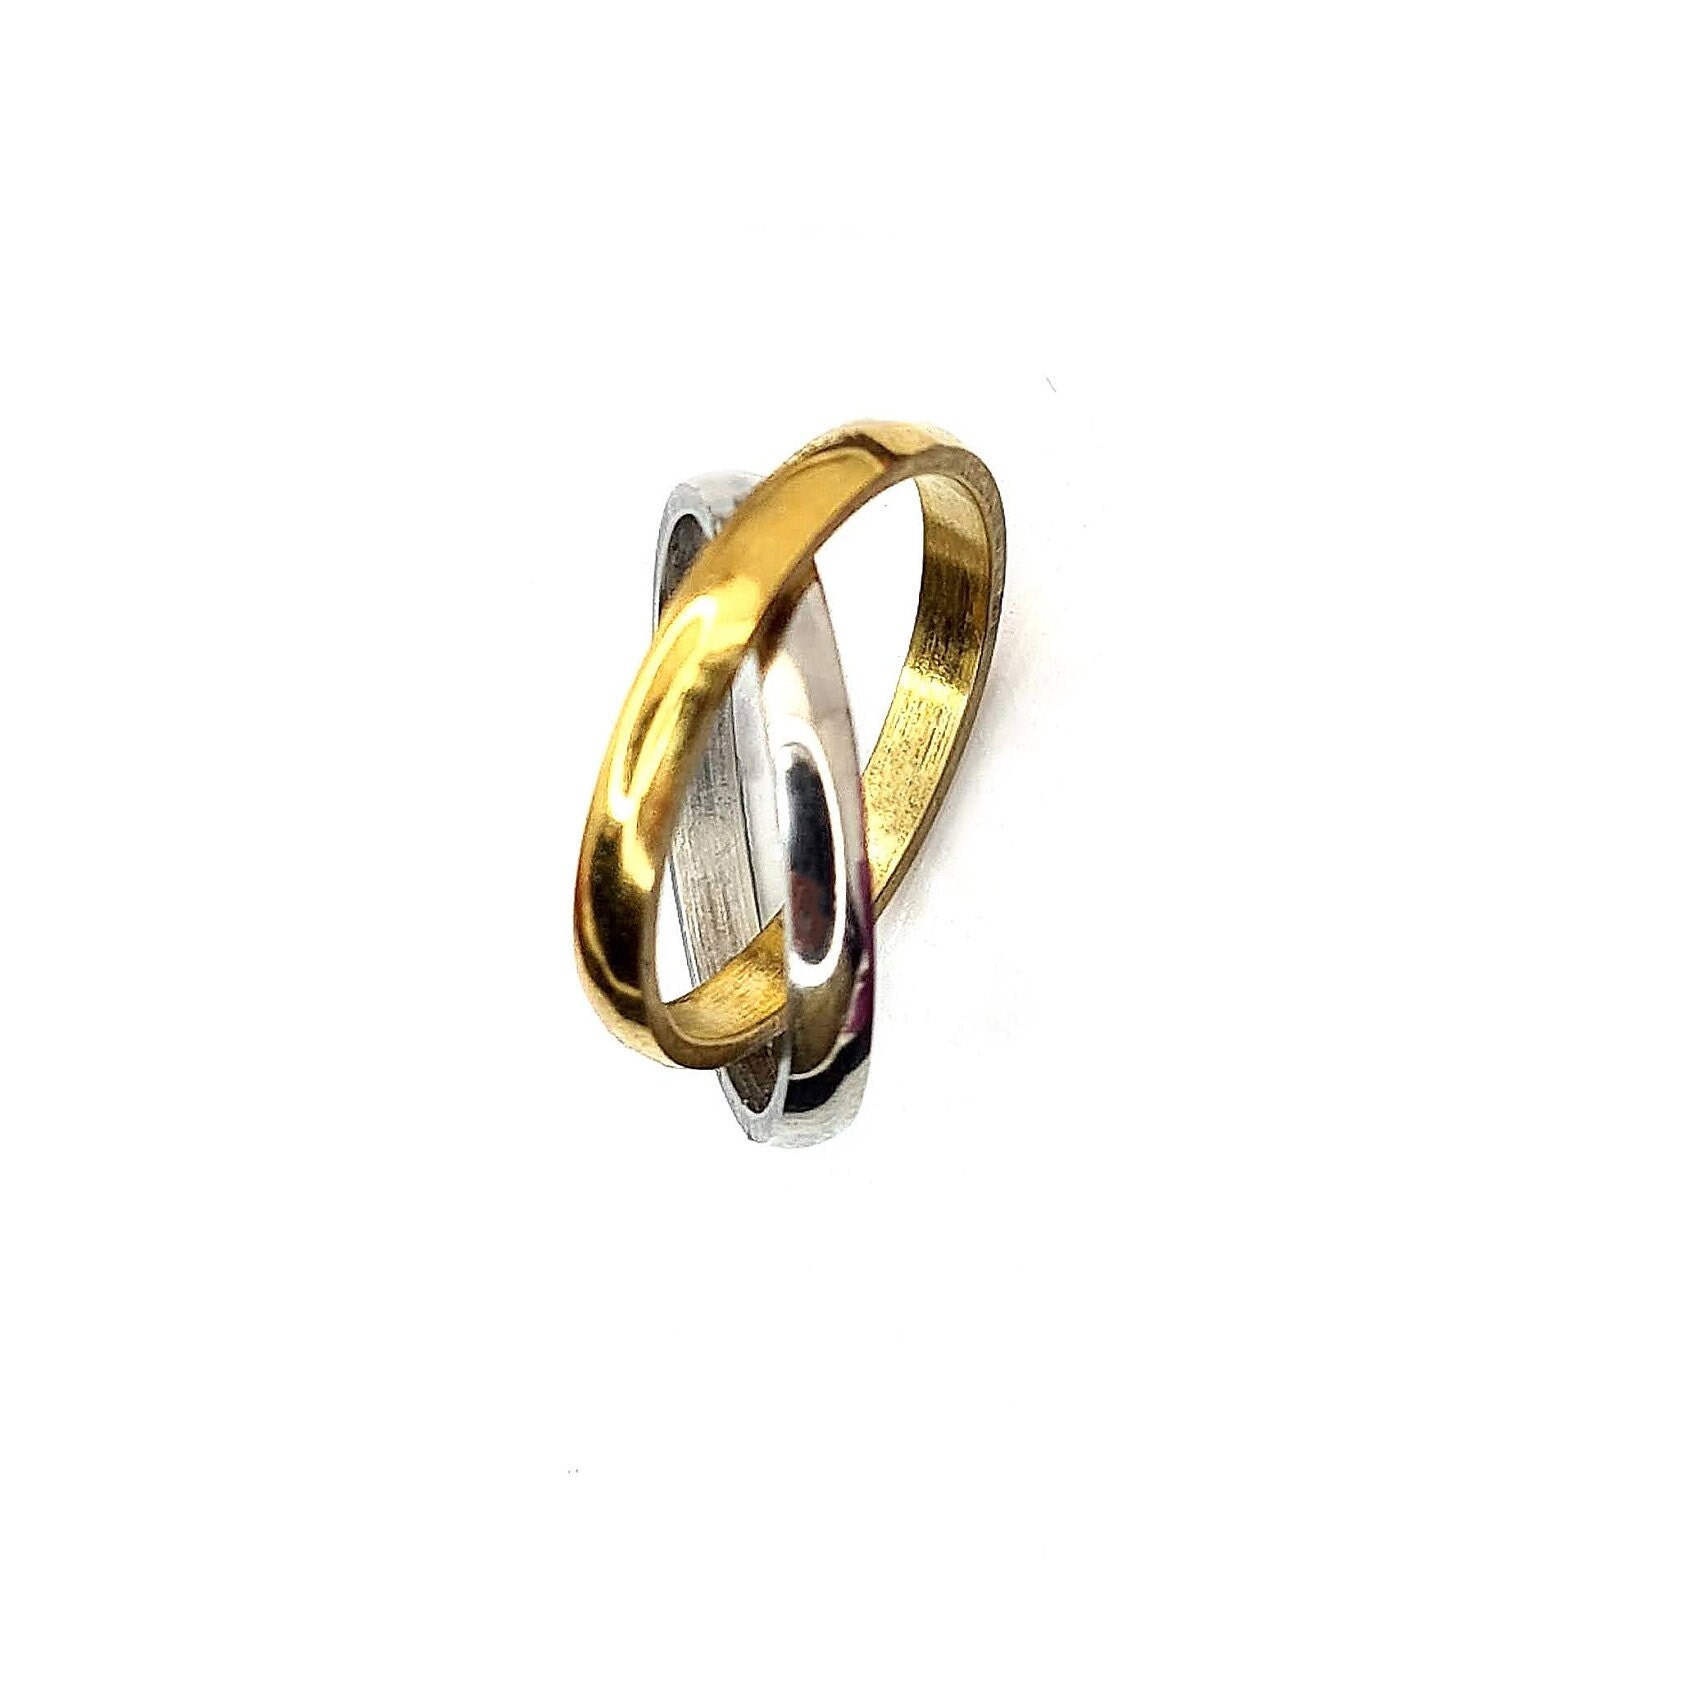 Louis Vuitton Empreinte Ring, White Gold Grey. Size 54